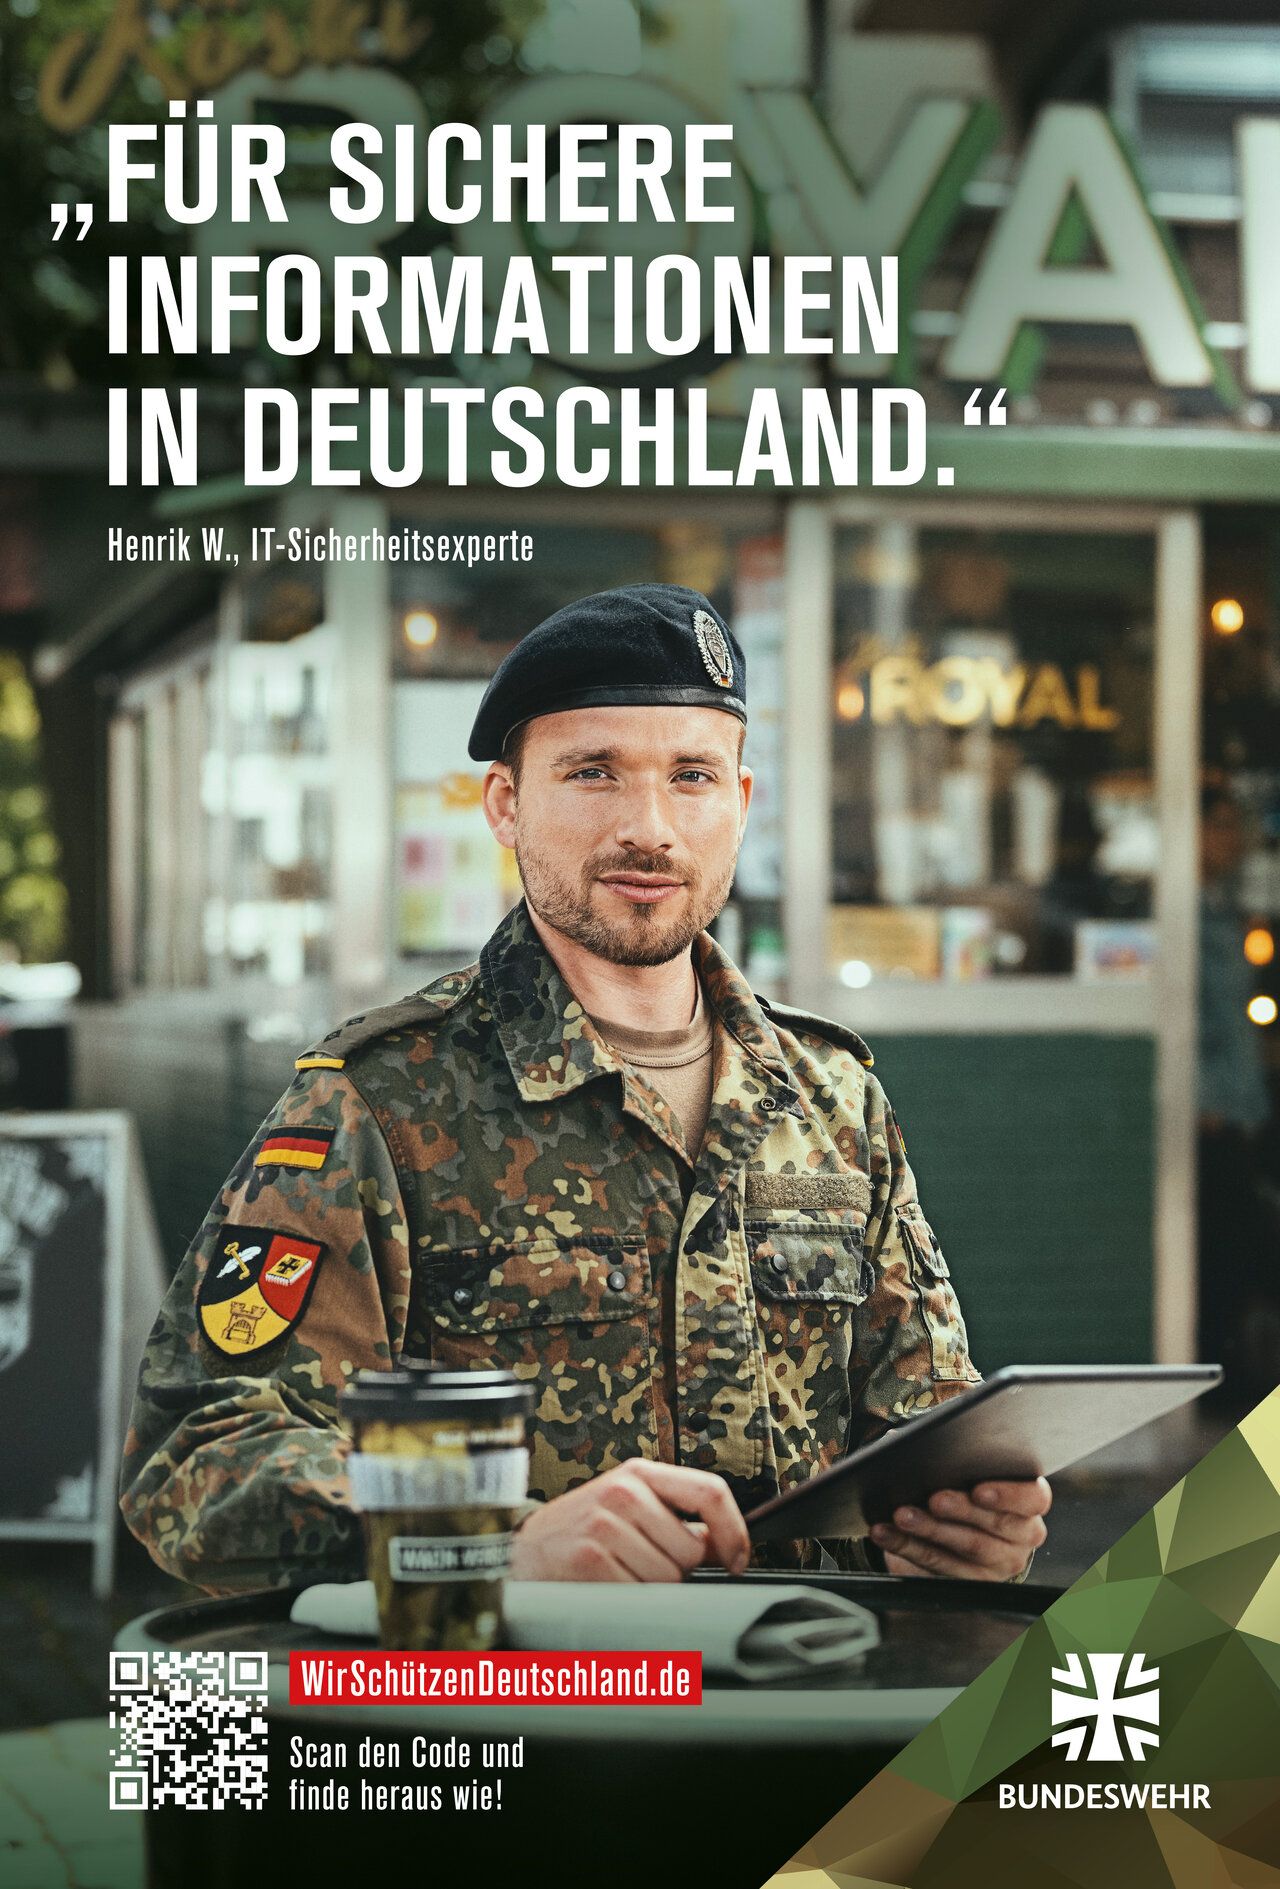 Ein Soldat mit Rechner in der Hand. Dazu der Text "Für sichere Informationen in Deutschland."